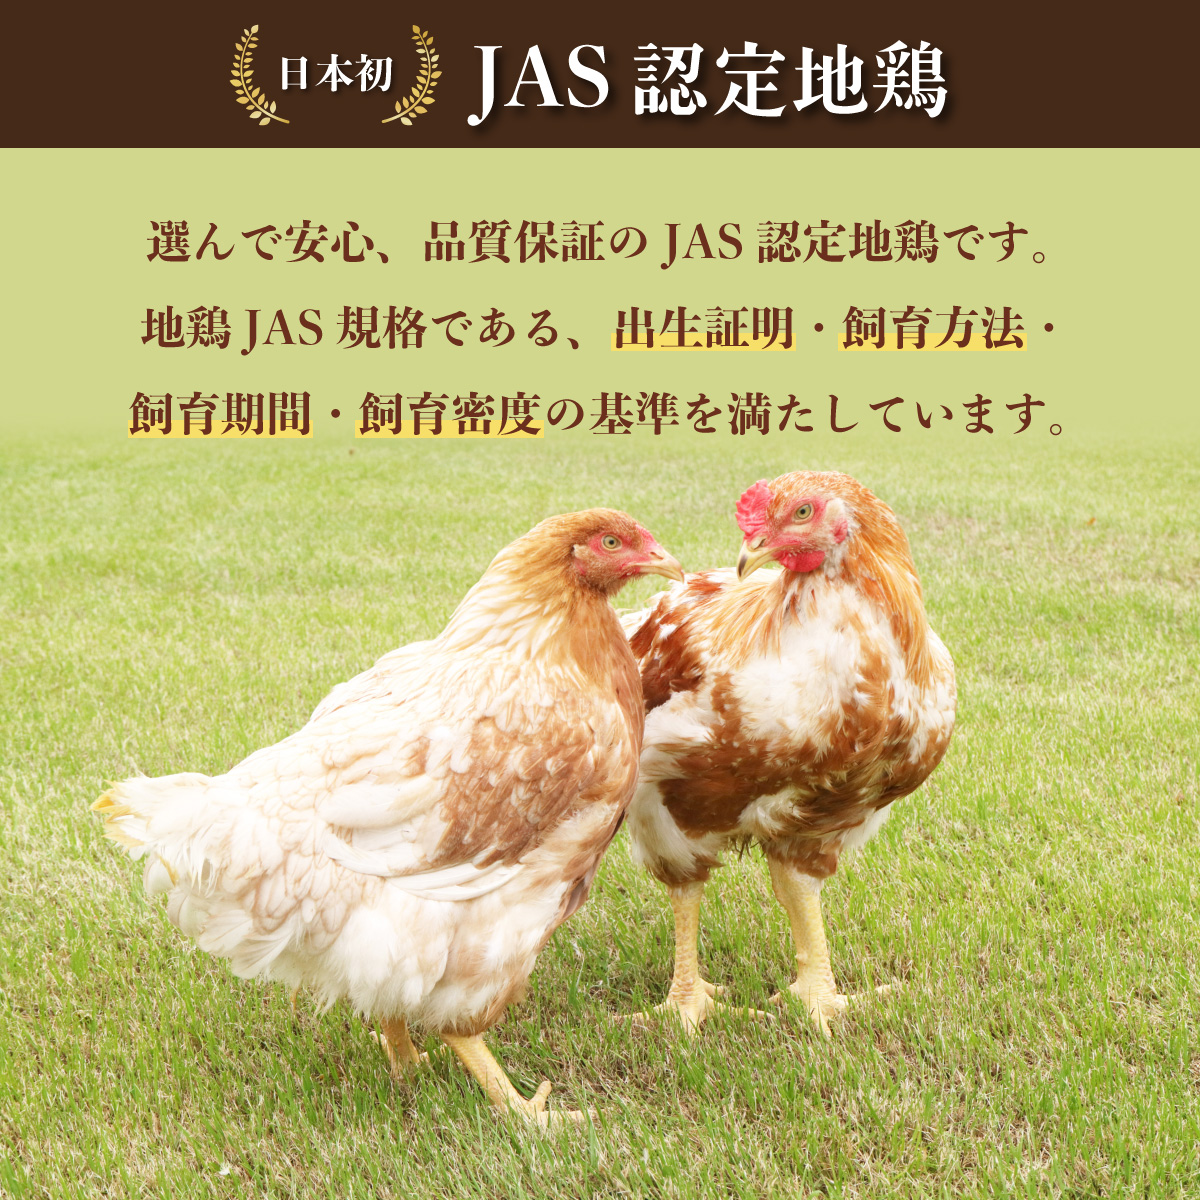 【阿波尾鶏バラ凍結定期便 3か月連続】阿波尾鶏 もも肉 切り身 バラ凍結 1.5kg×3回 計4.5kg 鶏肉 鶏もも 阿波尾鶏 冷凍 地鶏